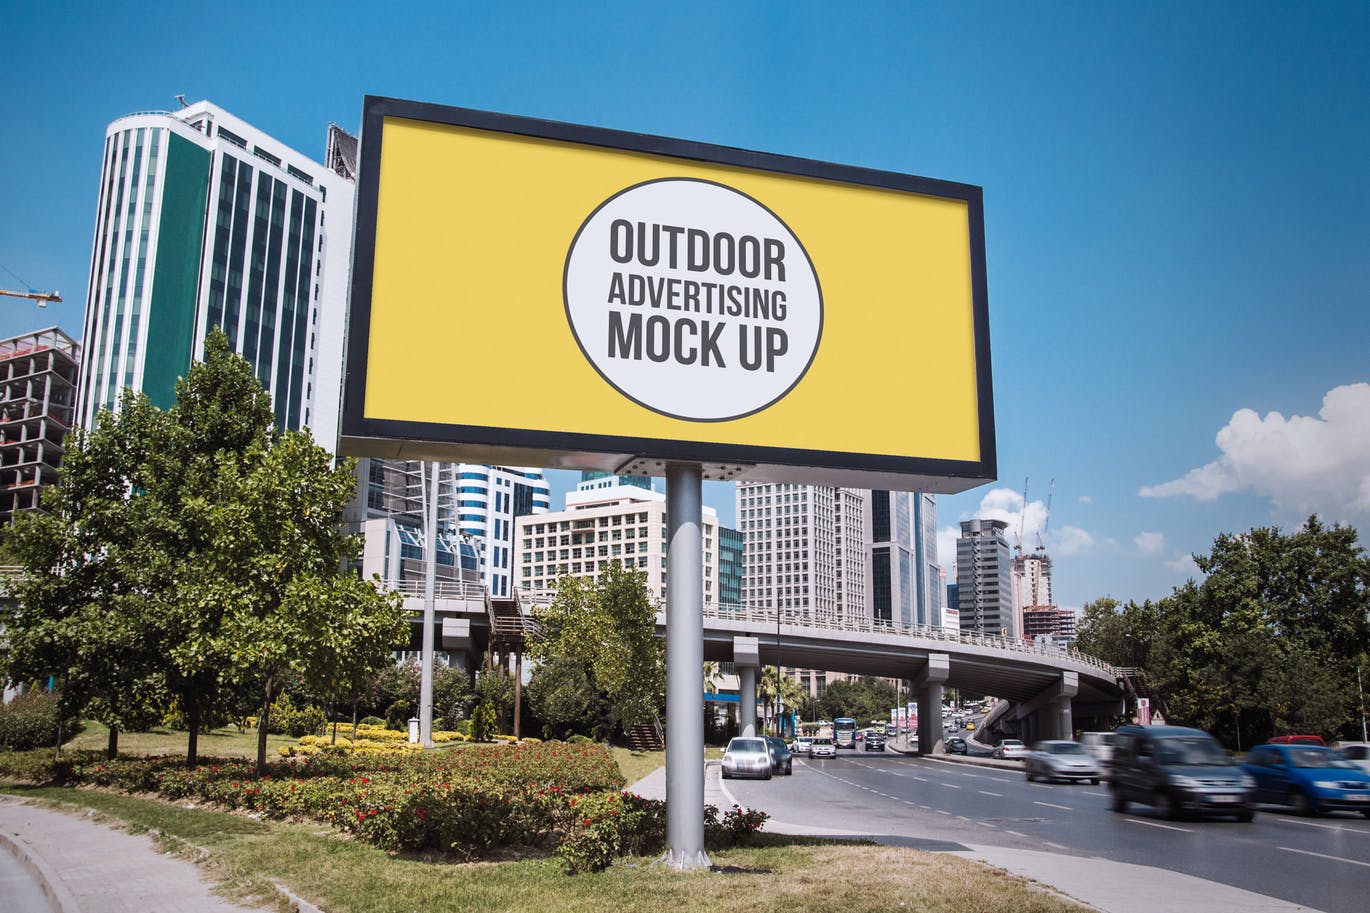 户外公路大型广告牌效果图样机模板#12 Outdoor Advertisement Mockup Template #12插图